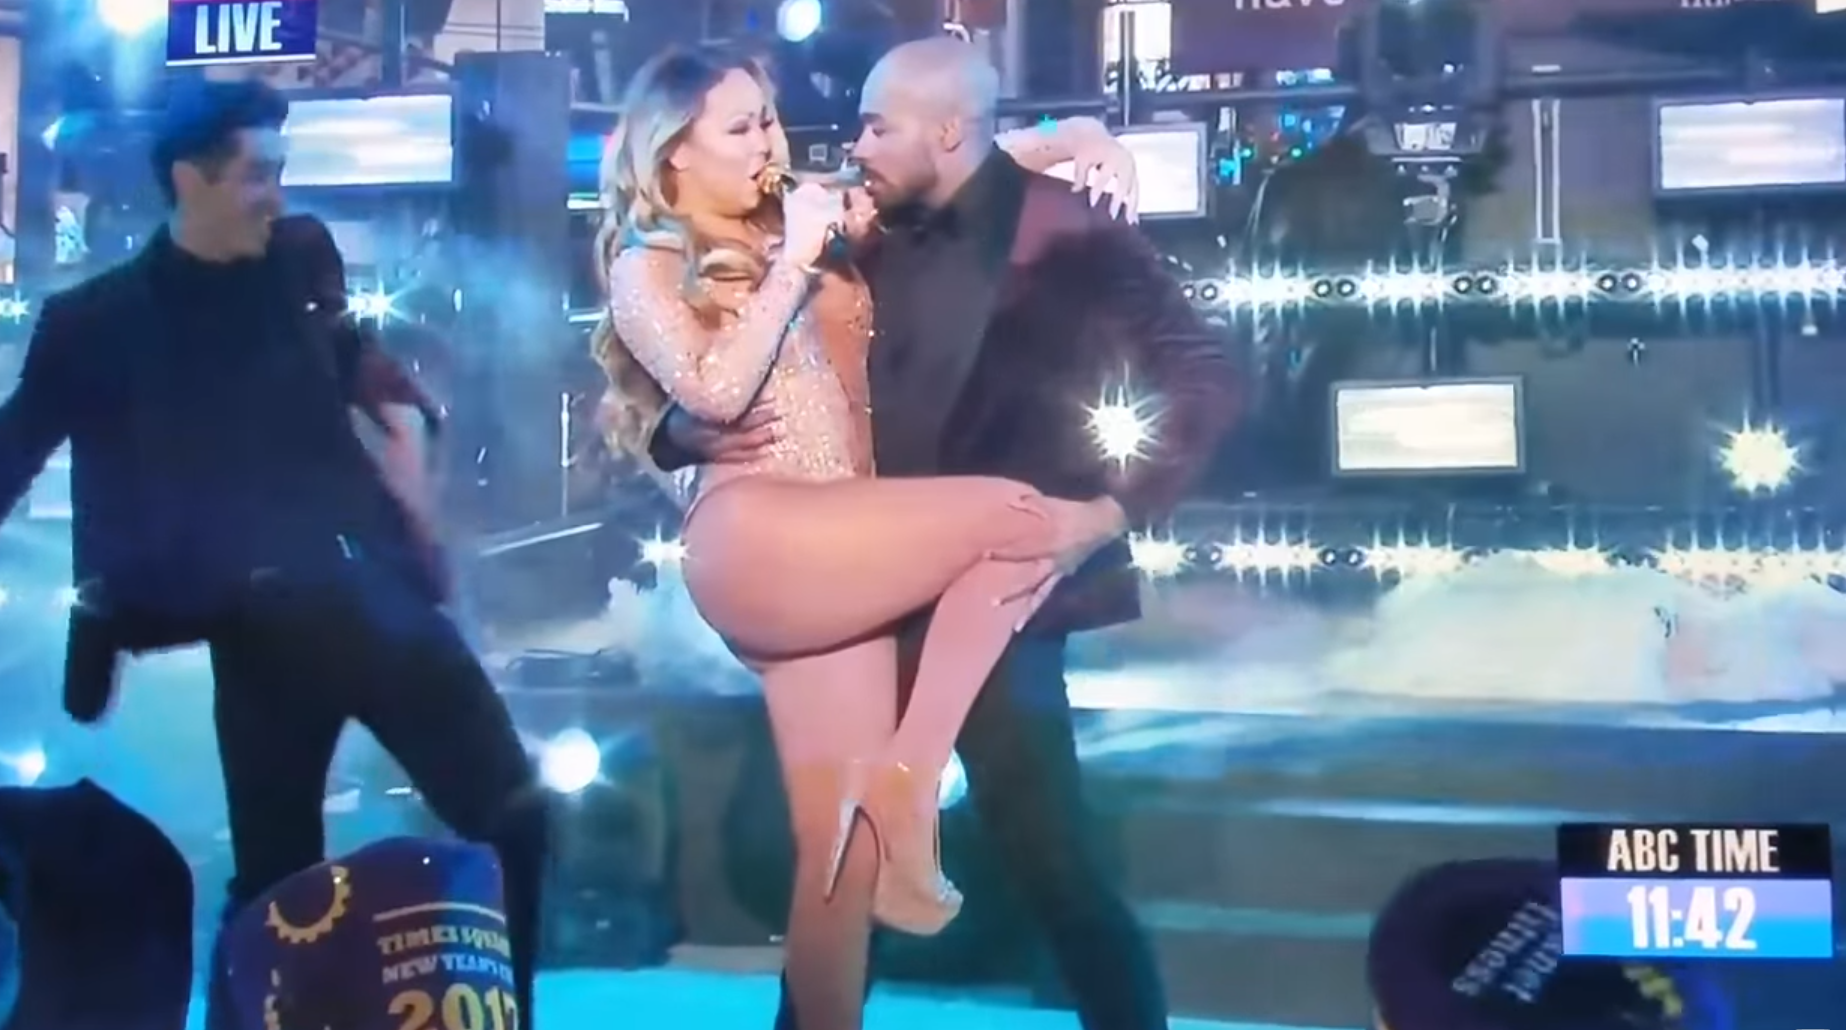 VÍDEO: La accidentada actuación de fin de año de Mariah Carey